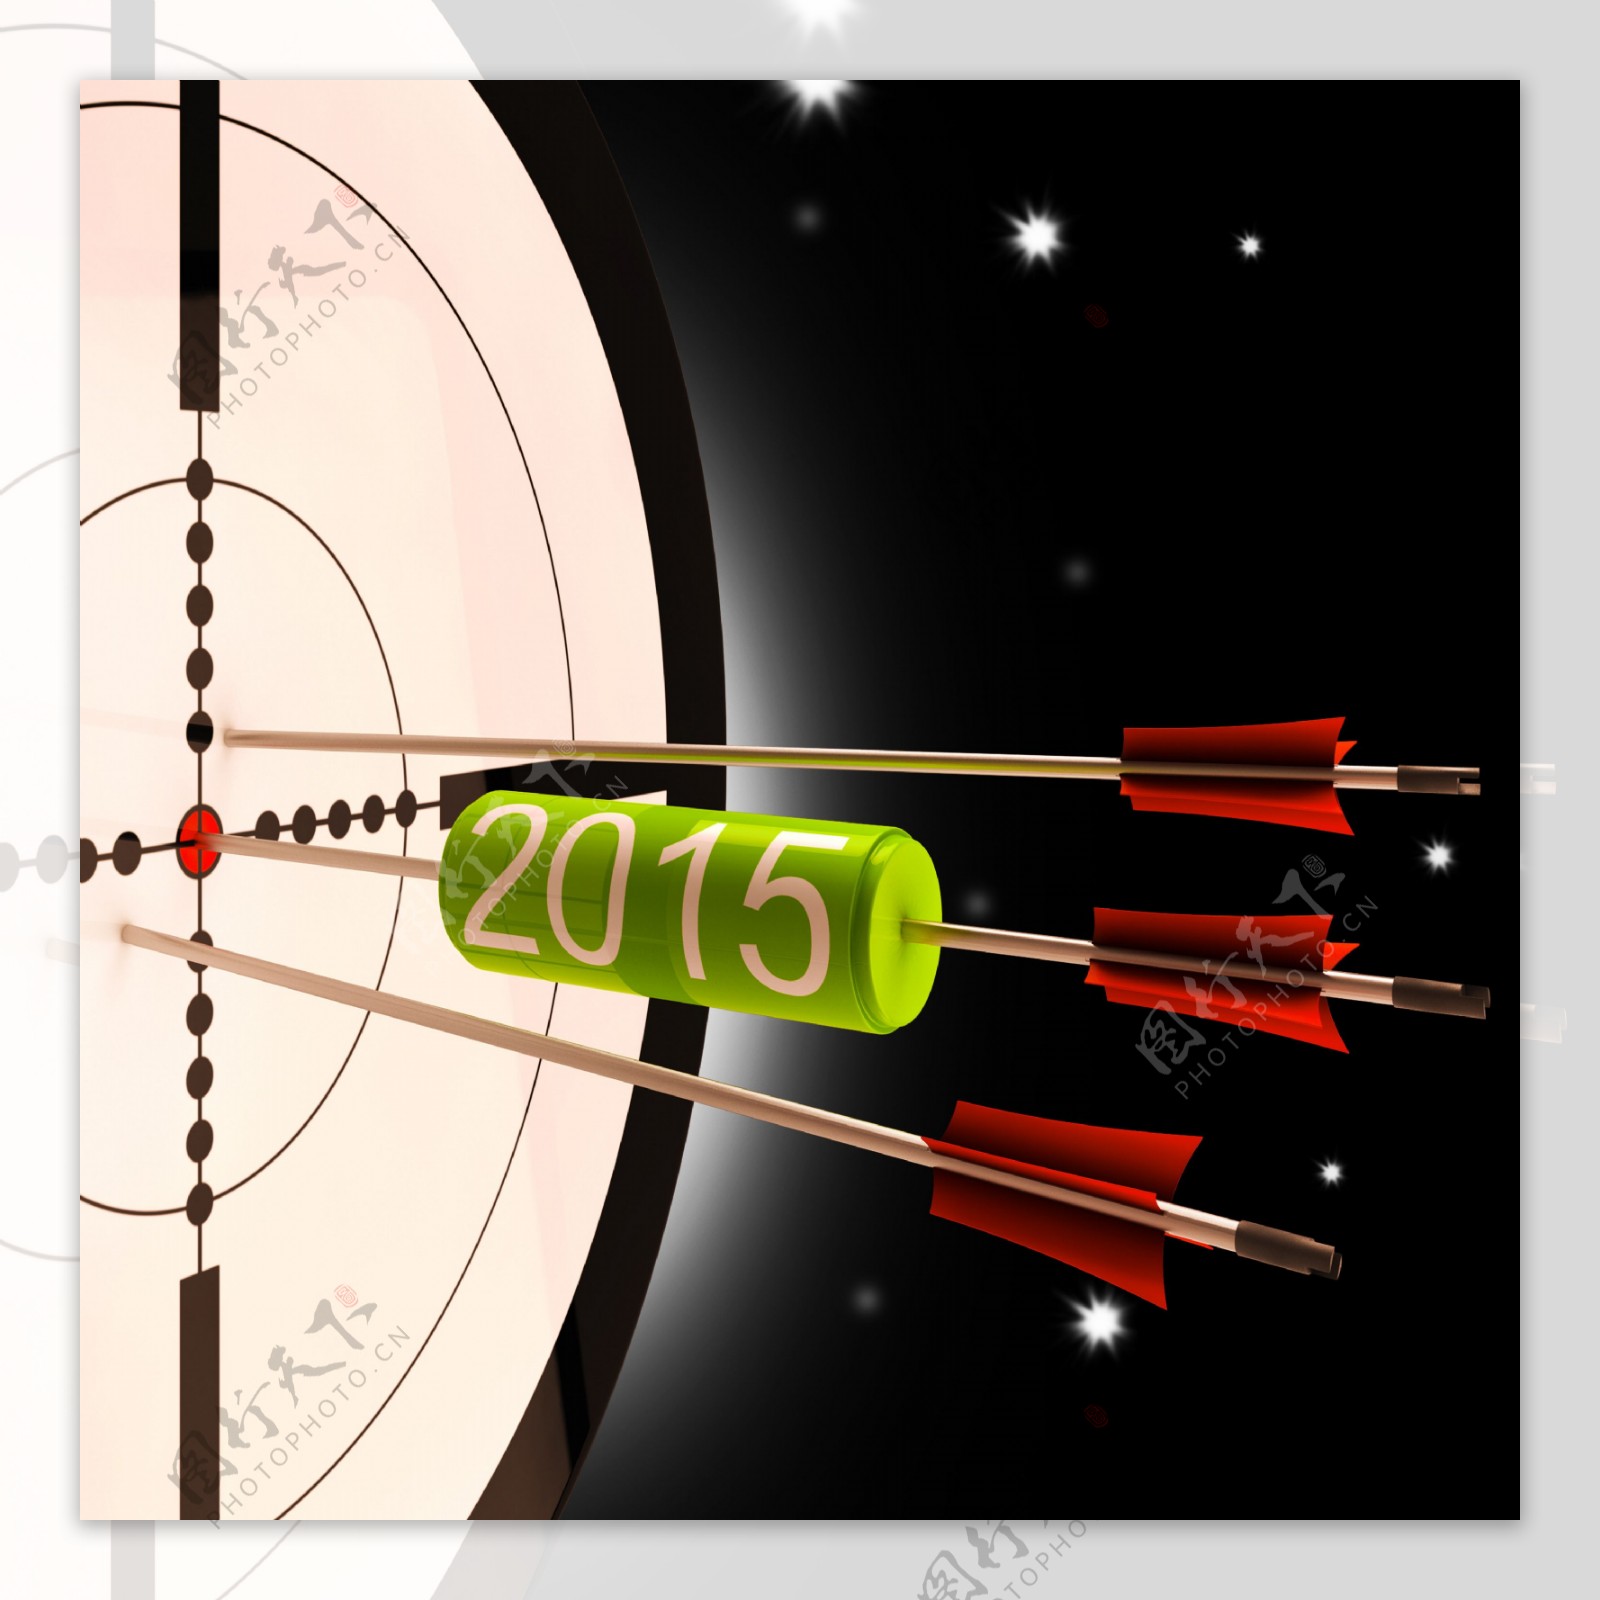 2015未来的投影显示的远期规划目标